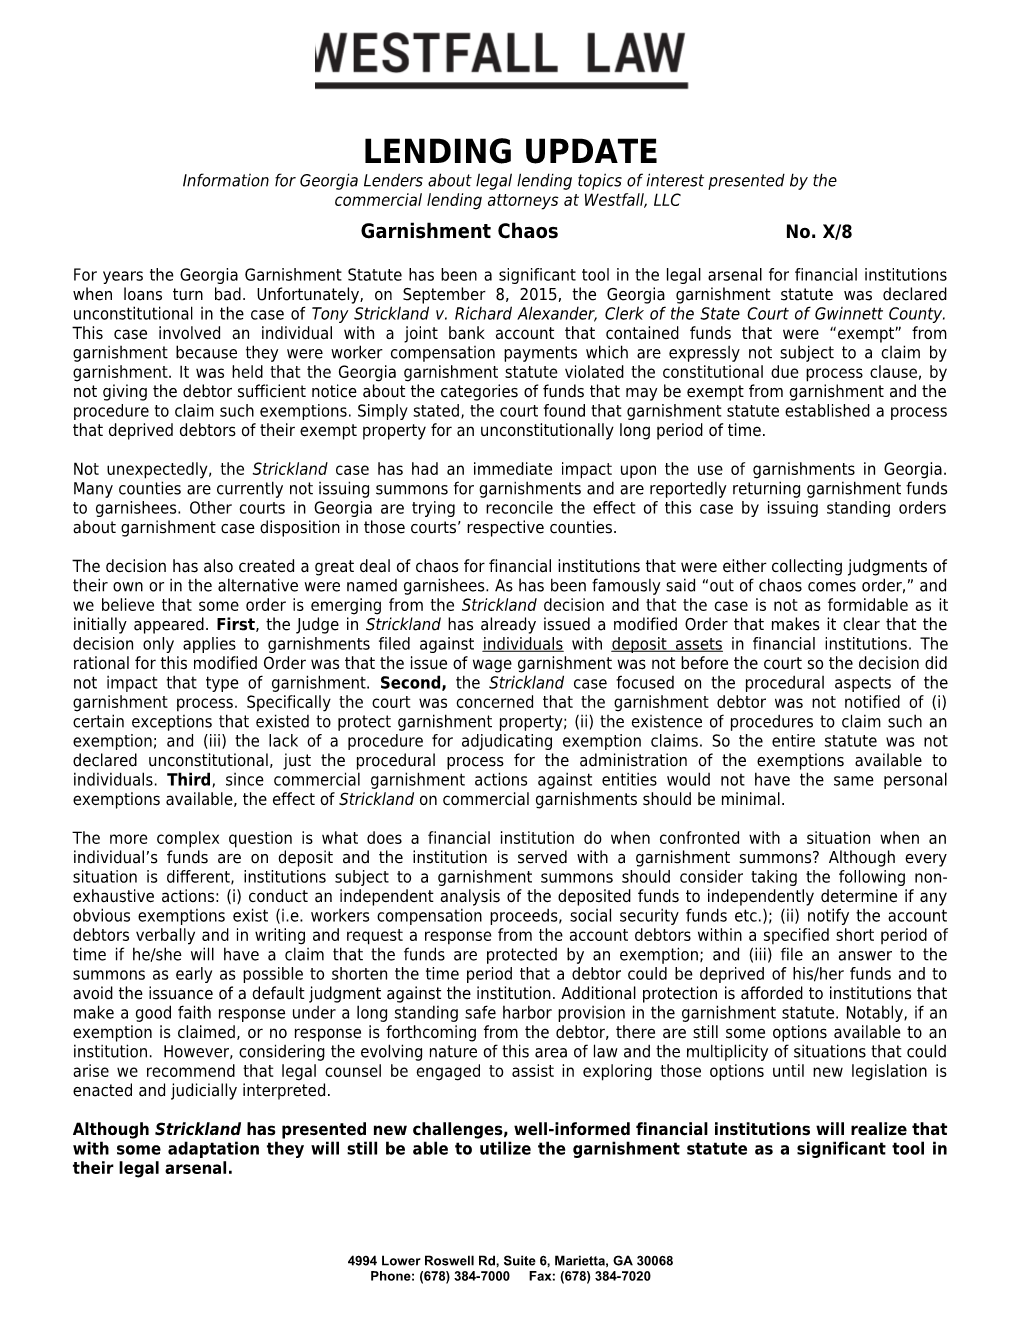 Lending Update / WL / 8 Garnishment Chaos (00128882-3)